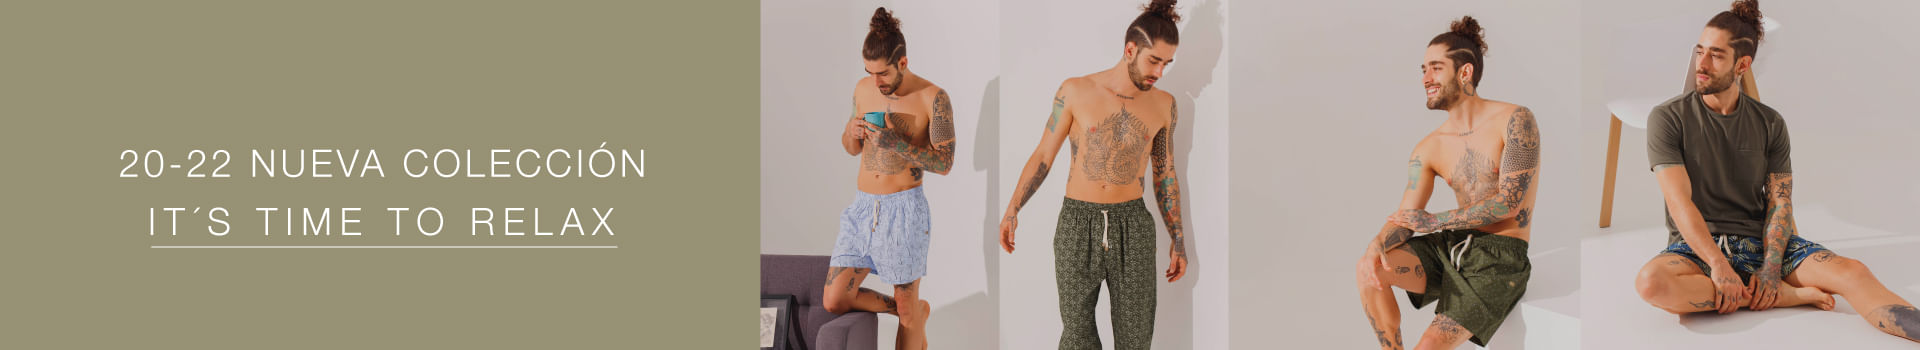 lanzamiento nueva coleccion relax, pijamas y ropa de descanso para hombre